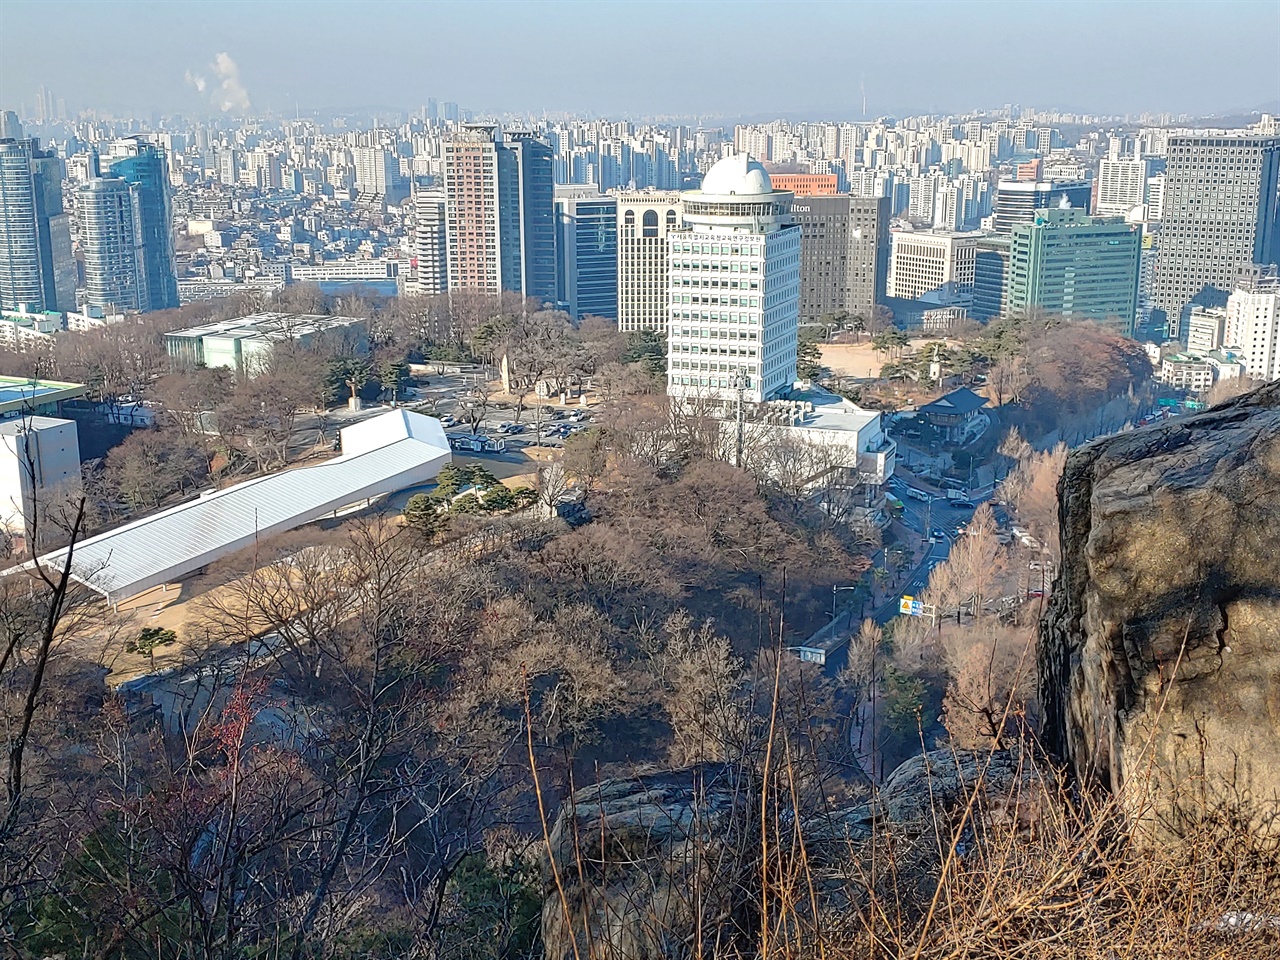 조선신궁이 차지하던 자리의 지금 모습. 앞에 높은 빌딩이 들어서 서울역 모습 등을 가리고 있음. 남산 성곽 복원 등으로 우리 정신을 찾는 주체적 시설로 변모 중. 